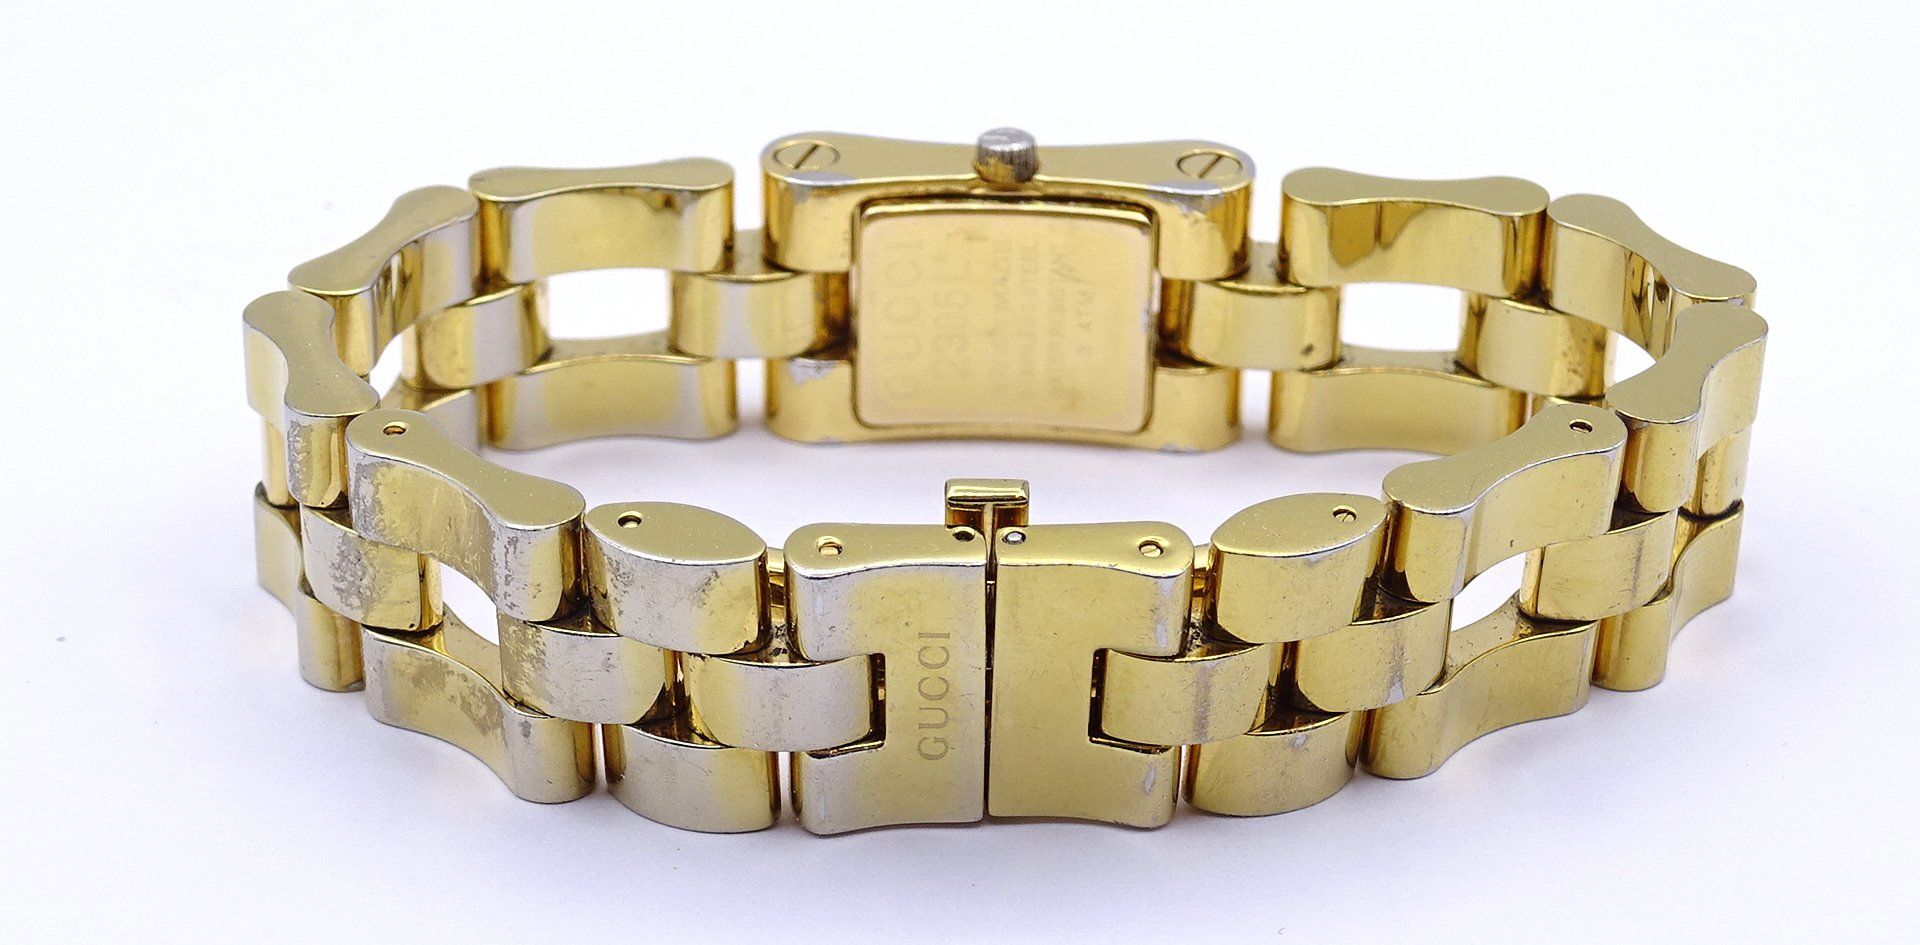 Damen Armbanduhr Gucci, Quartz, in Schachtel, stark berieben, Funktion nicht überprüft - Image 4 of 7